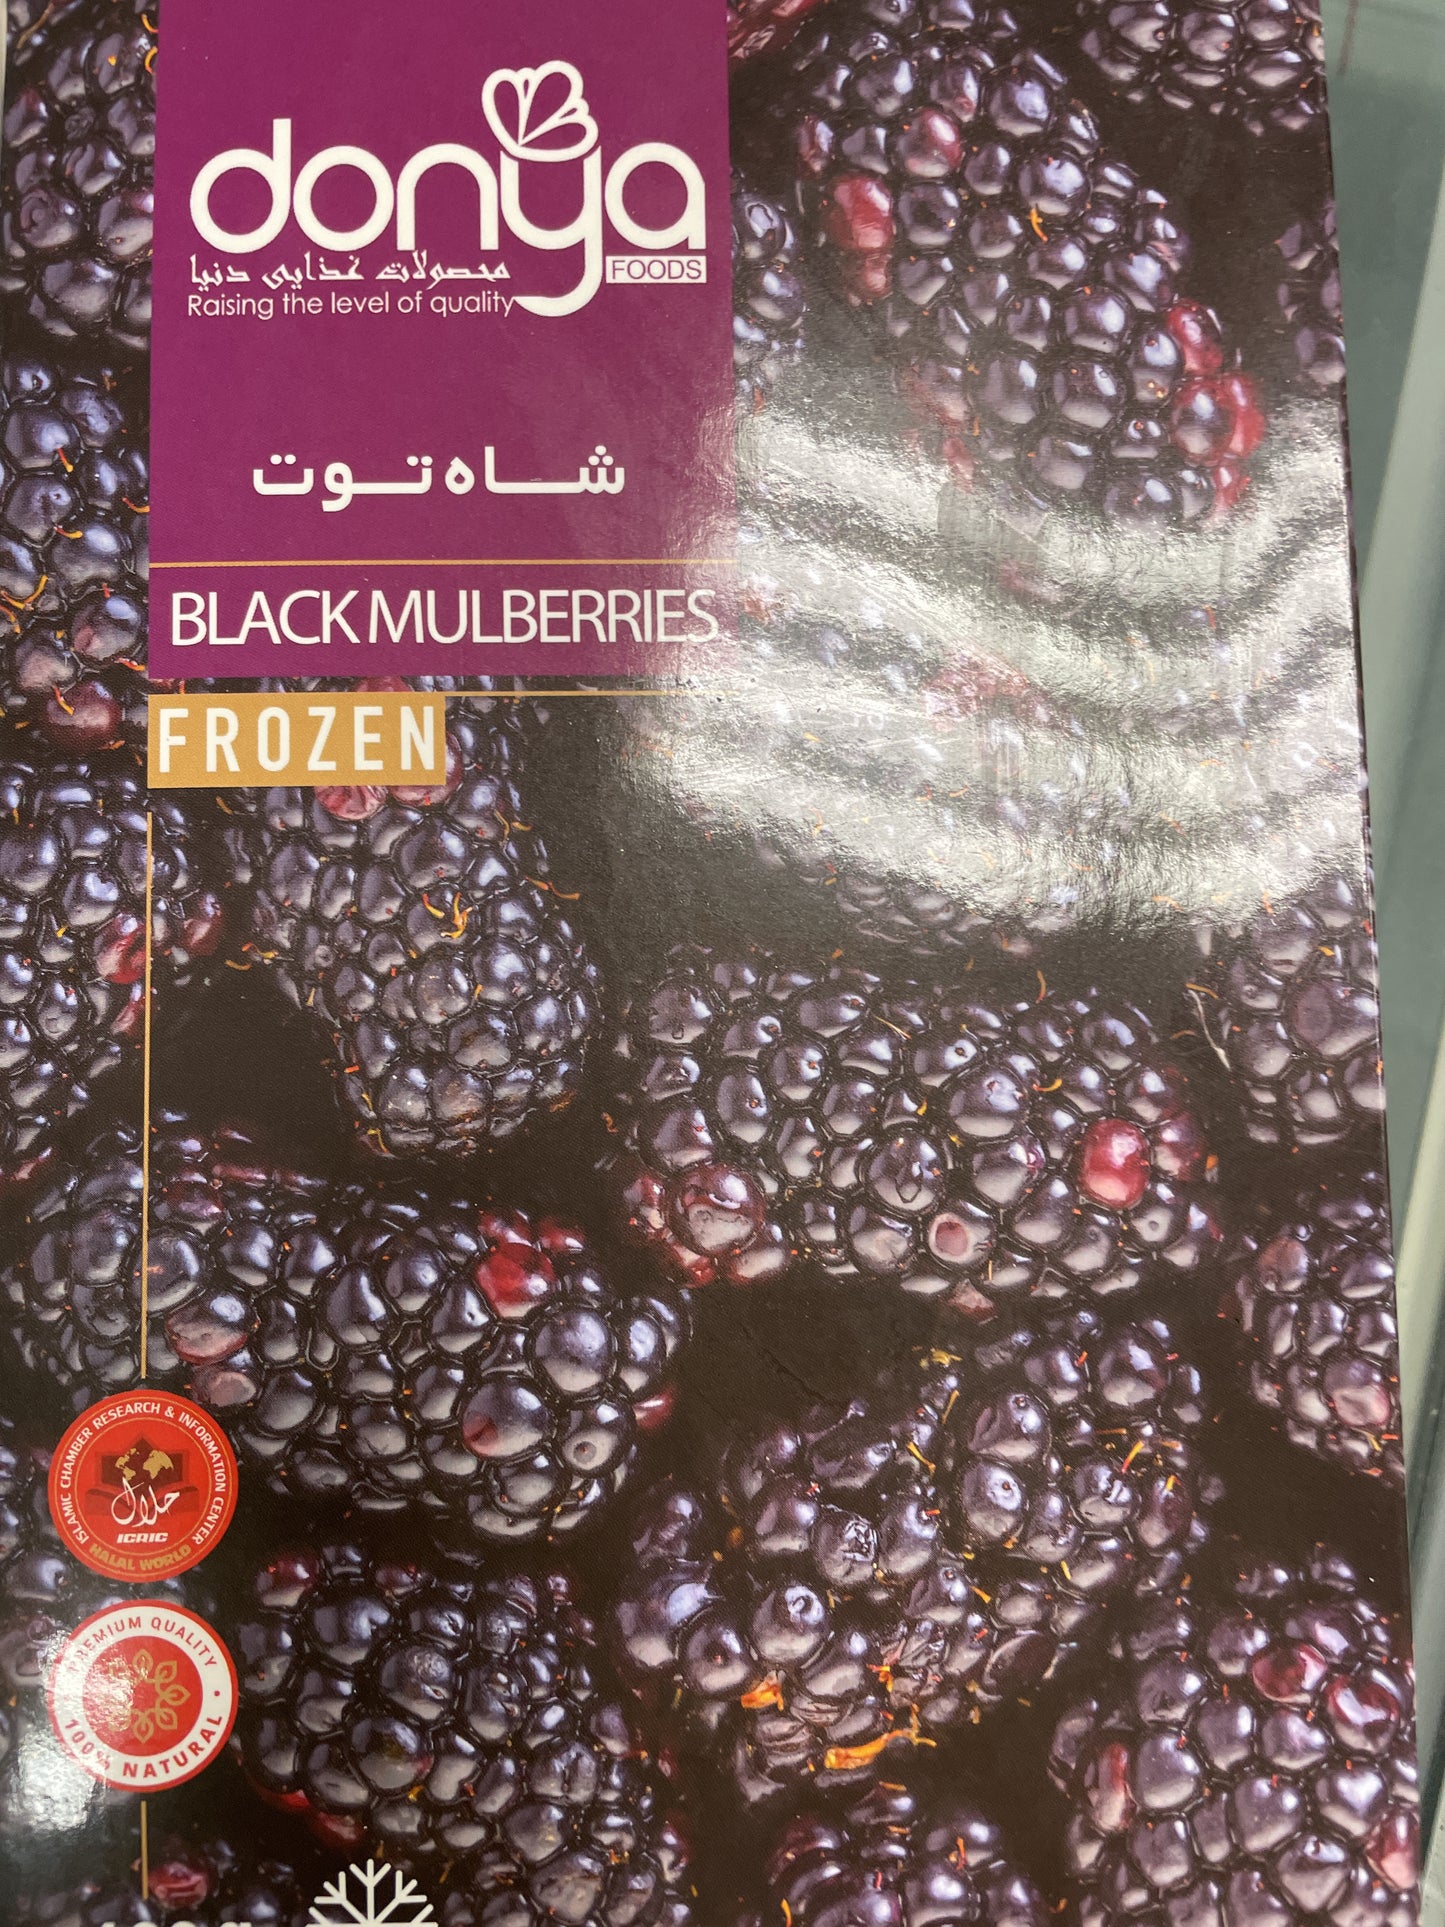 Frozen Black Mulberries